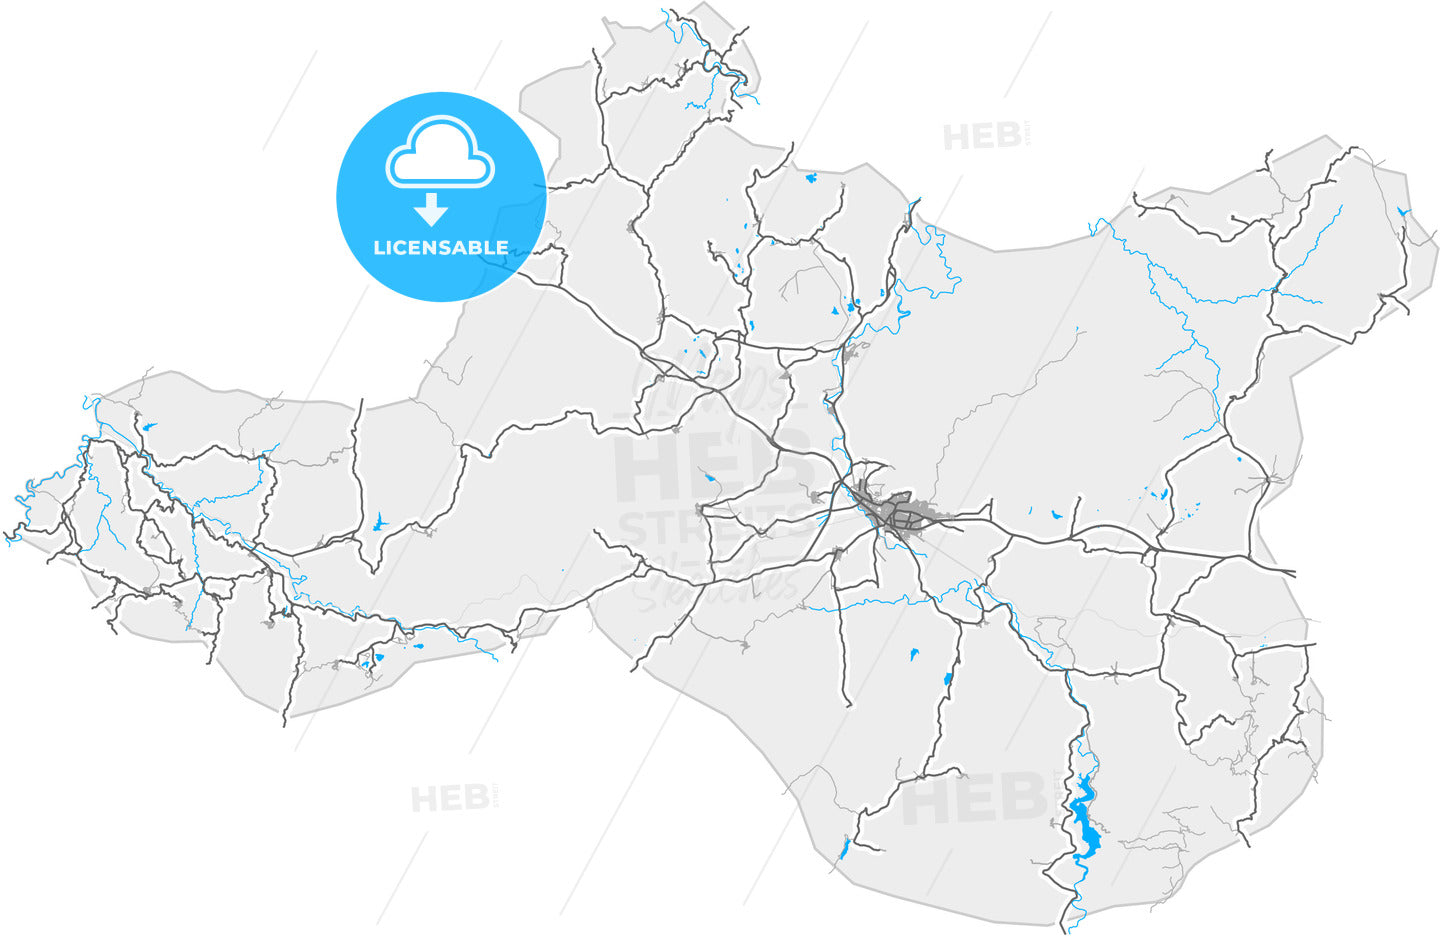 Tavşanlı, Kütahya, Turkey, high quality vector map